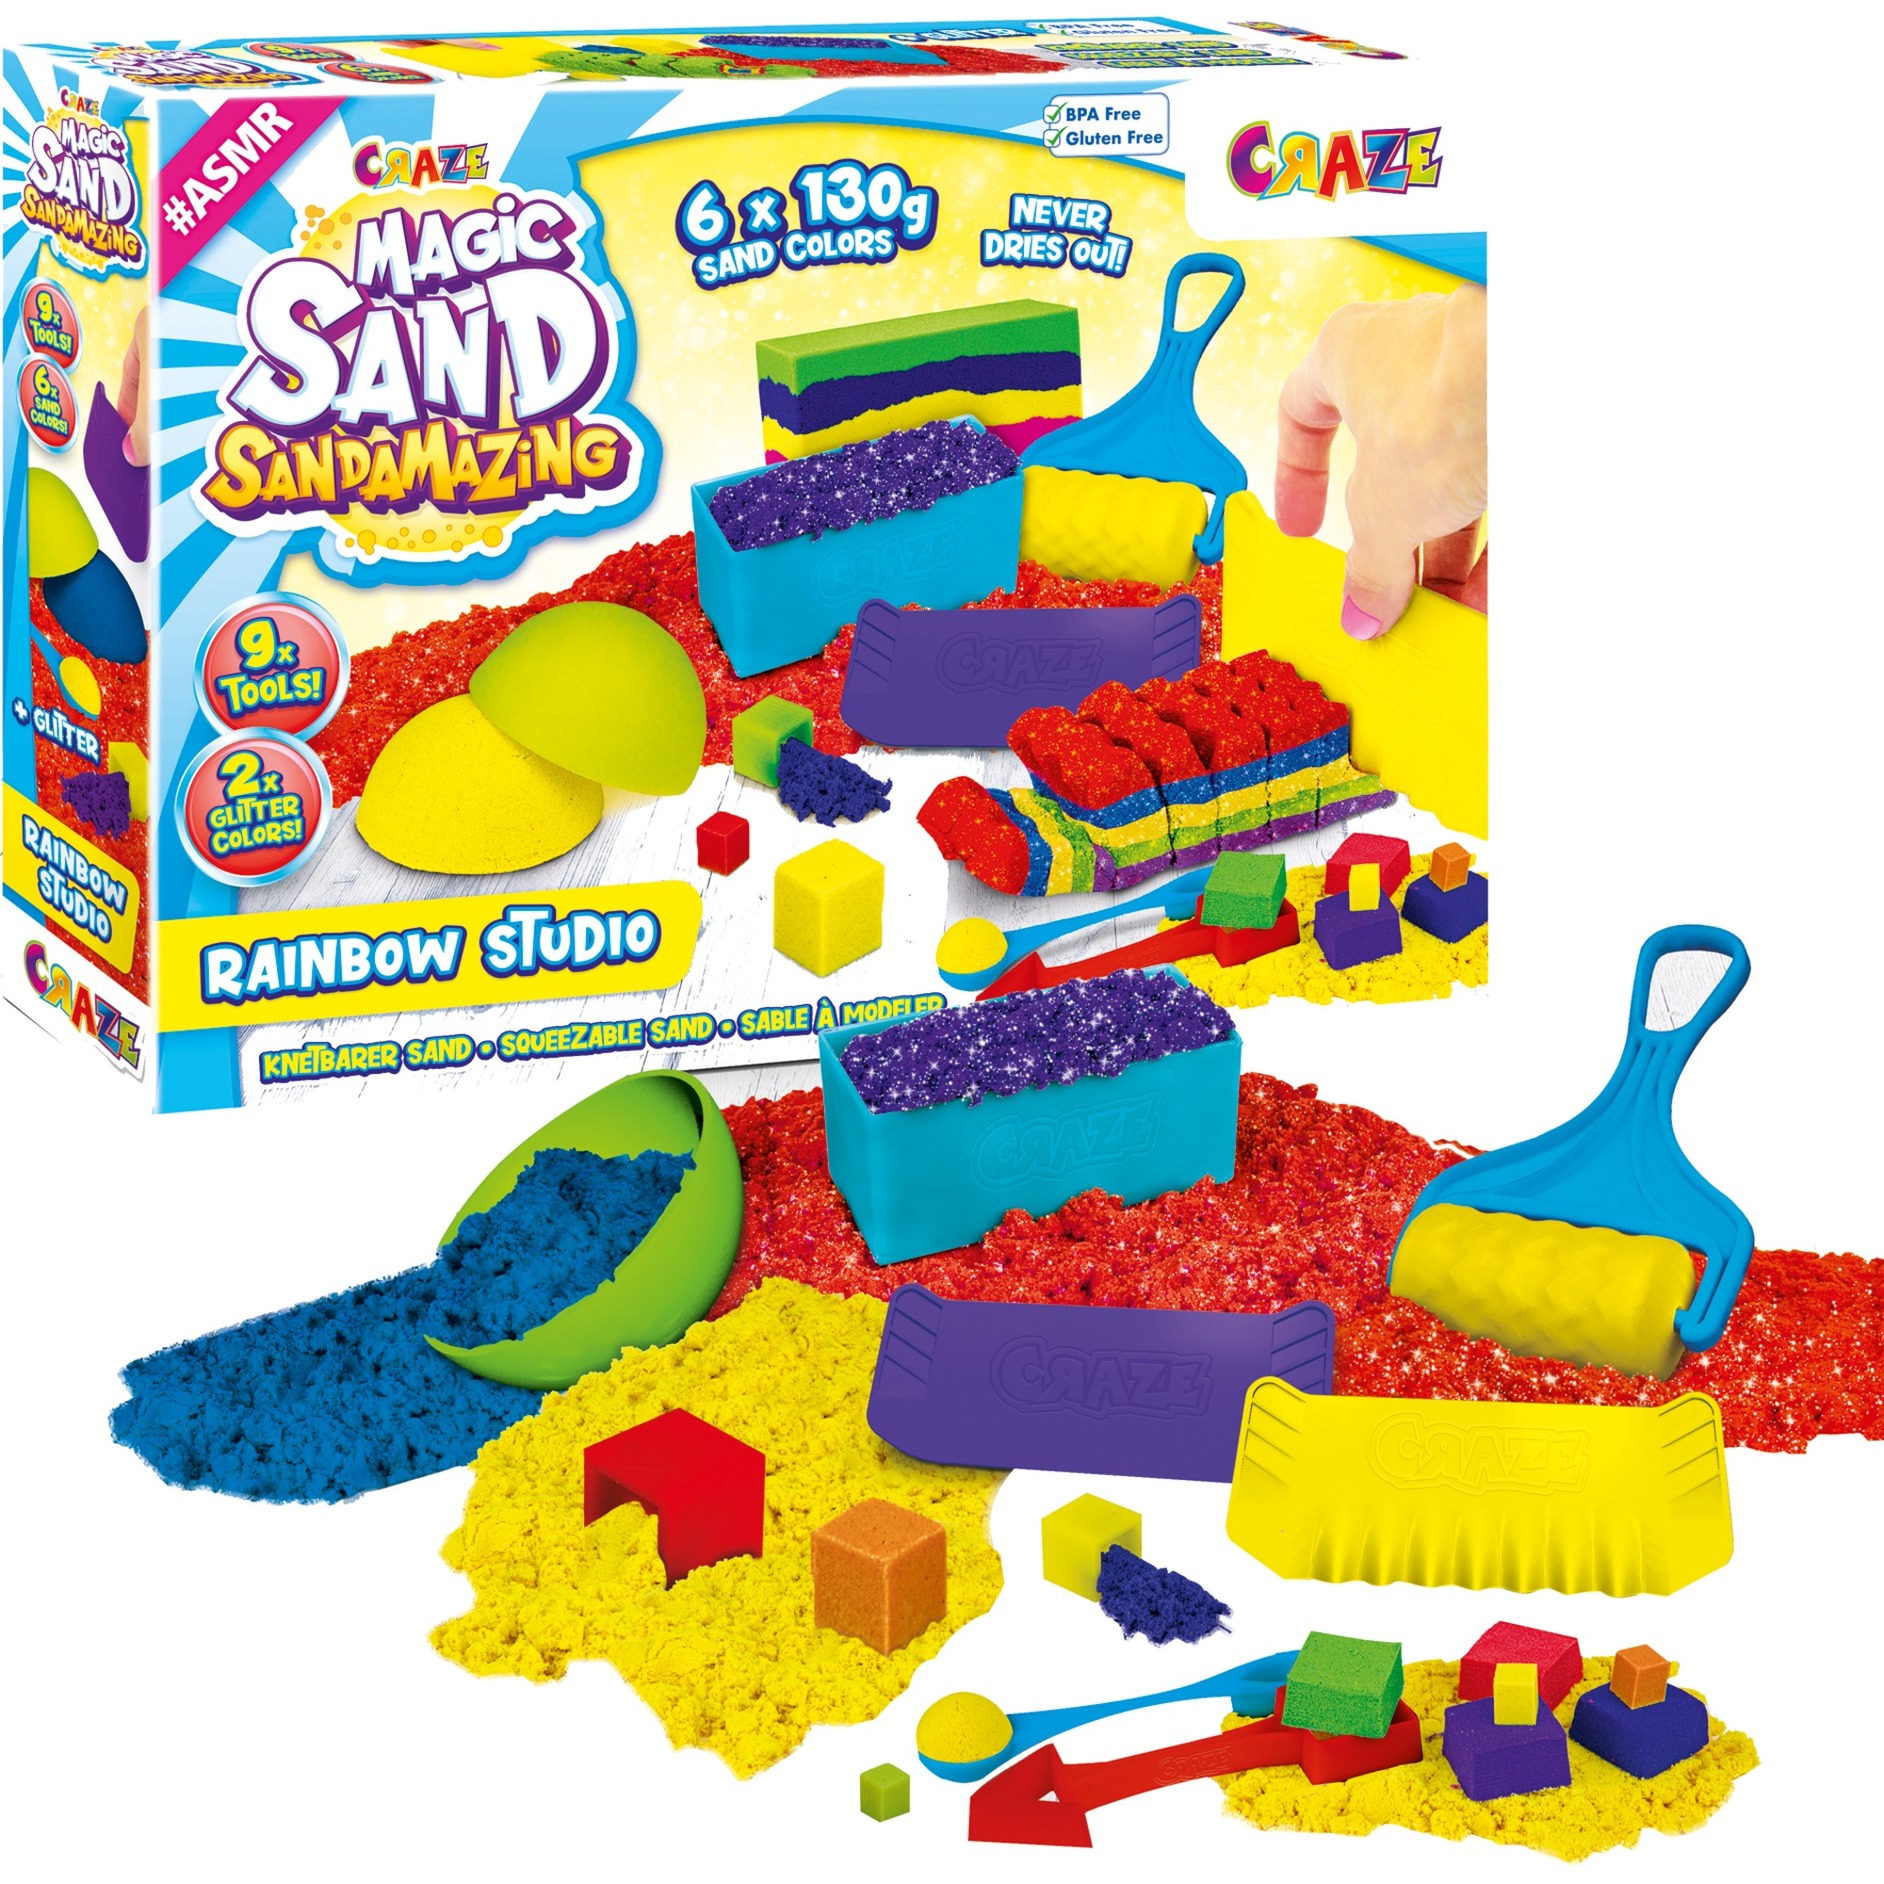 Image of Alternate - Magic Sand Sandamazing Rainbow Studio, Spielsand online einkaufen bei Alternate